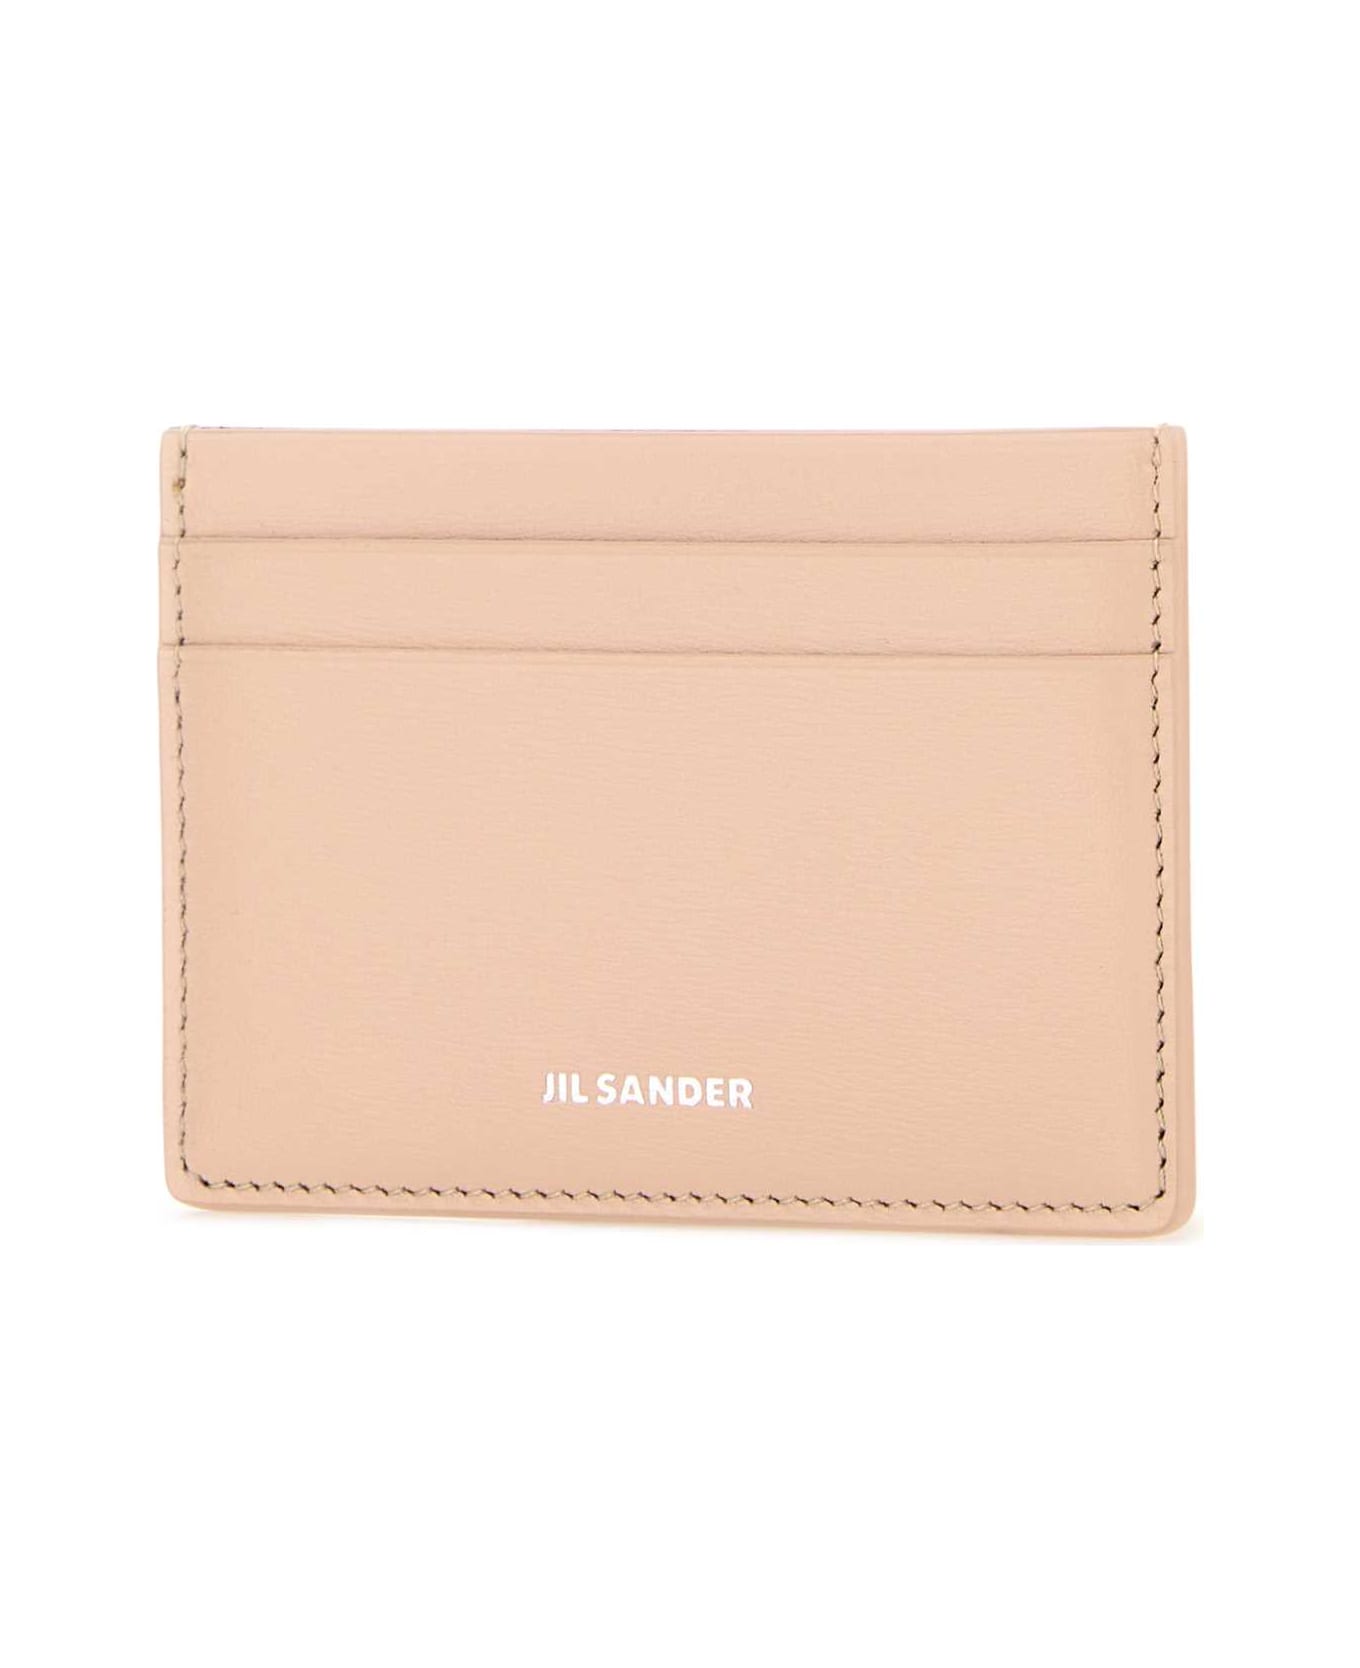 Jil Sander Pastel Pink Leather Card Holder - 679